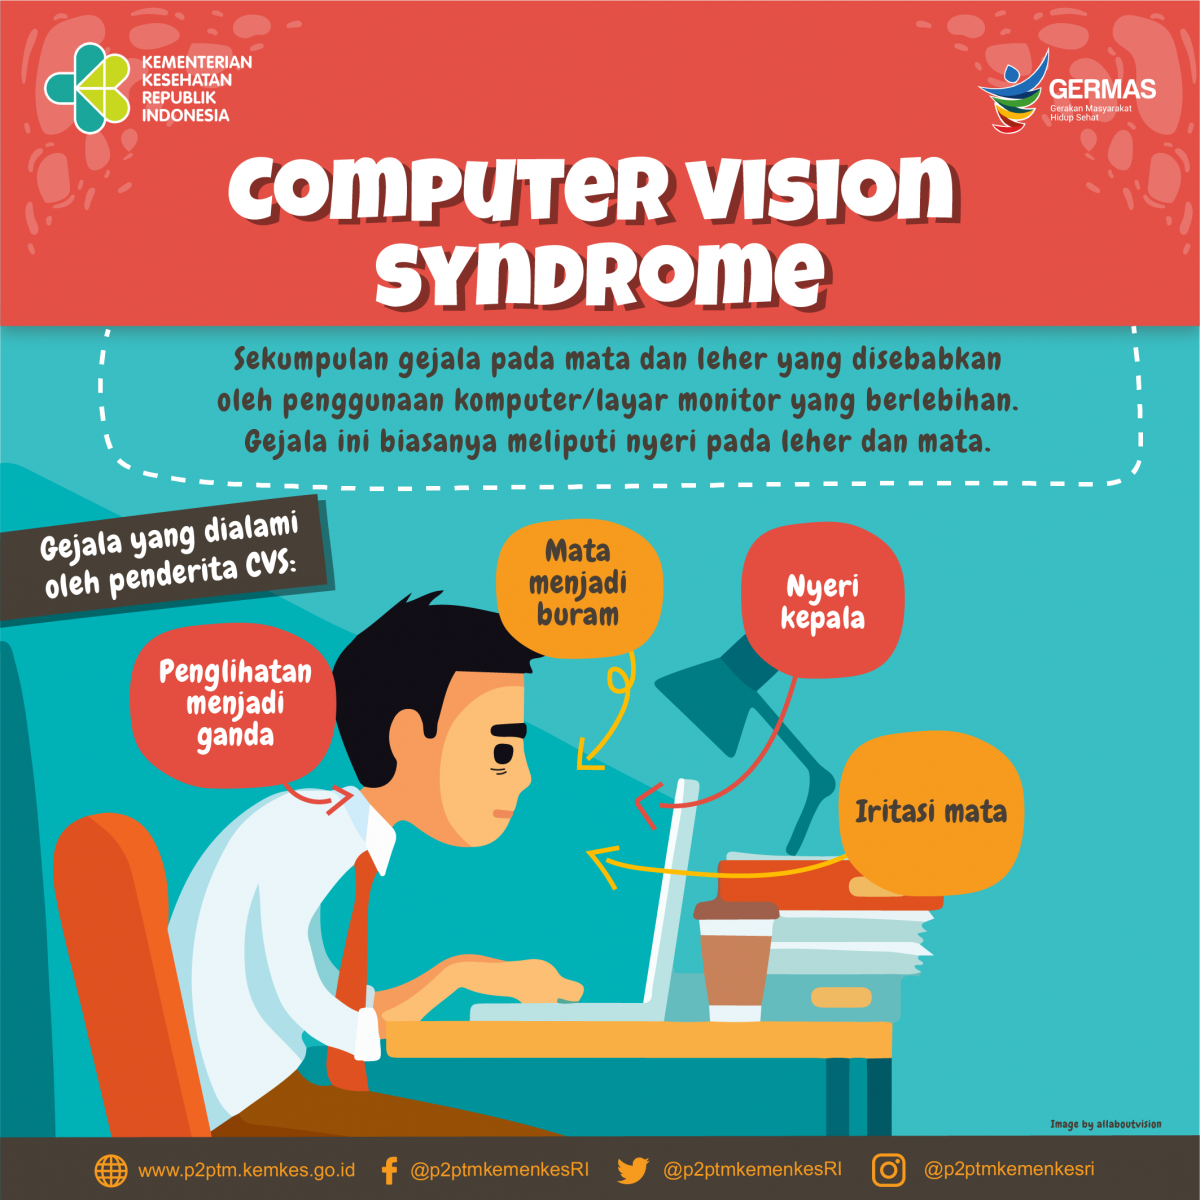 Waspadai Computer Vision Syndrome